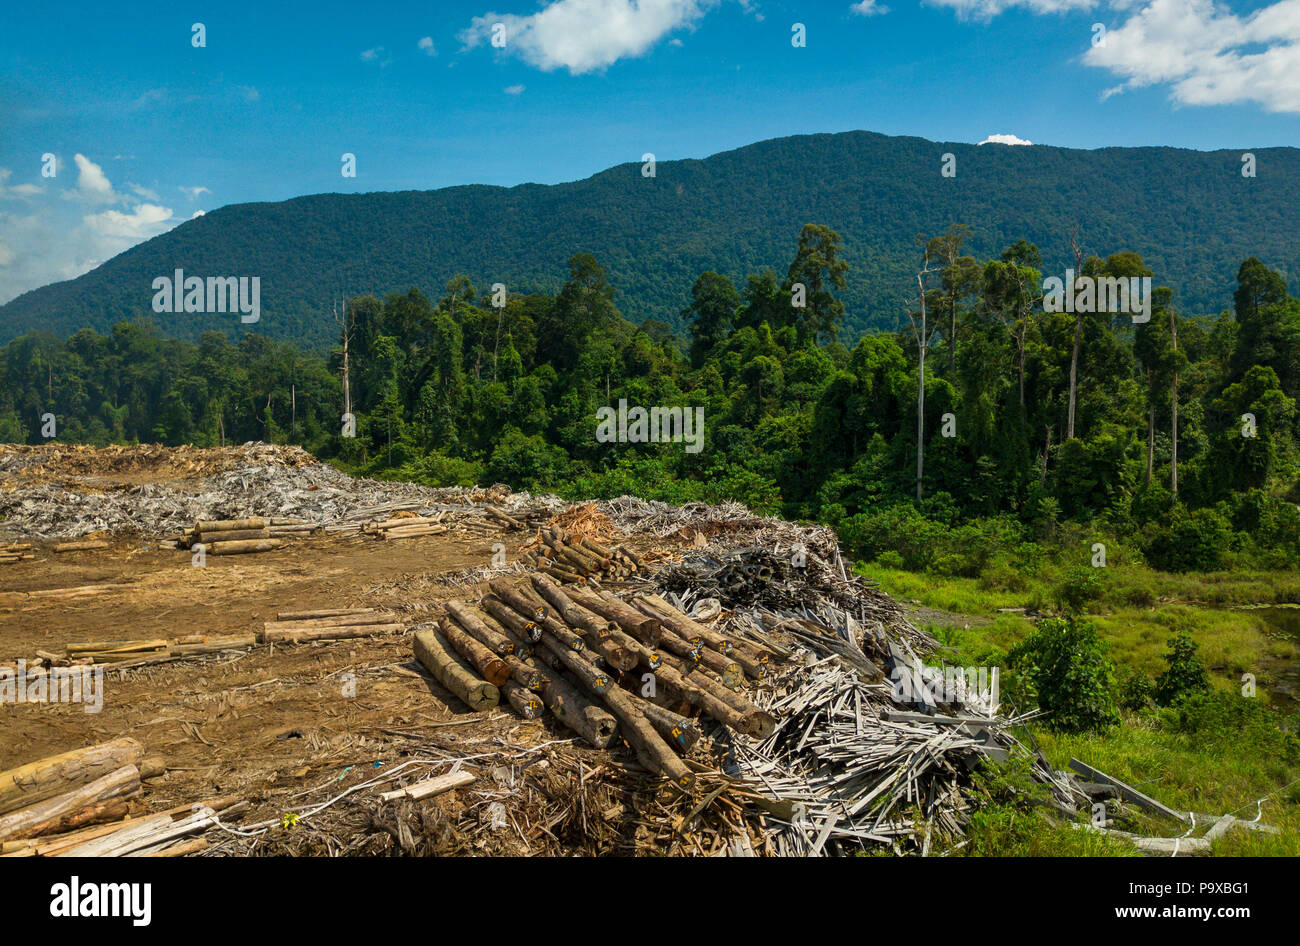 De bois à un chantier d'exploitation commerciale du bois près de Tongod à Sabah, Malaisie, (Bornéo), avec les forêts tropicales et les montagnes en arrière-plan. Banque D'Images